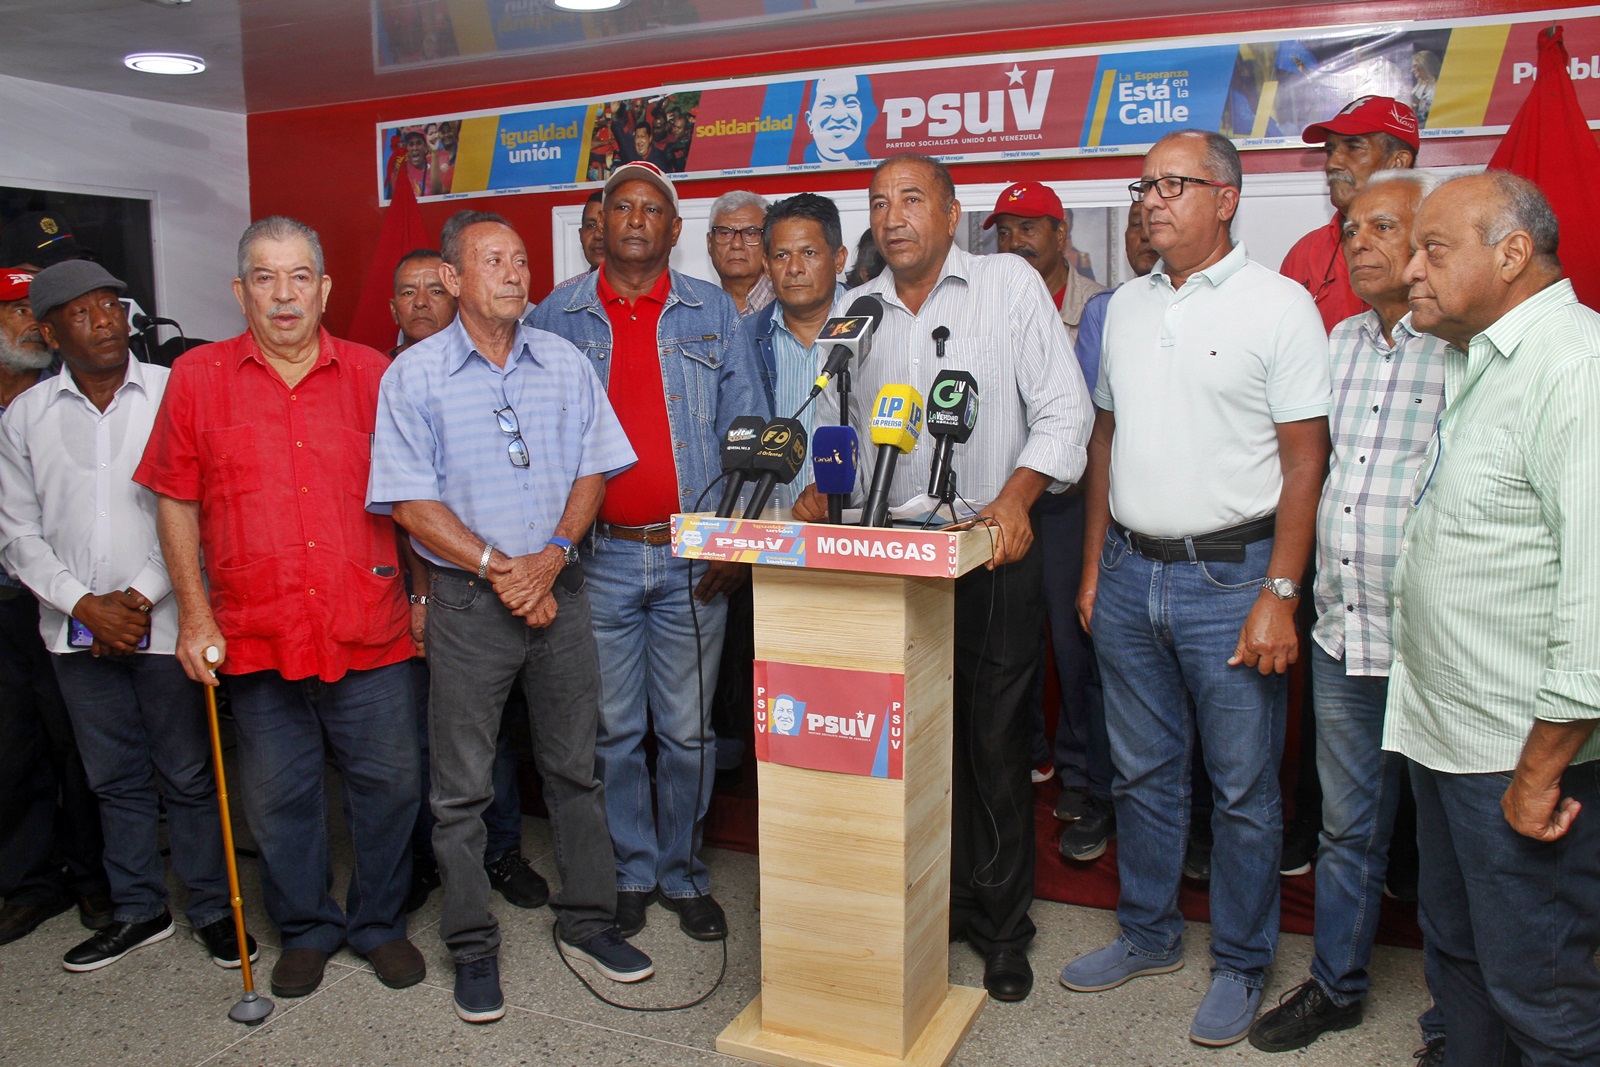 Manuel Villalba del PSUV insta al apoyo a Maduro en las elecciones